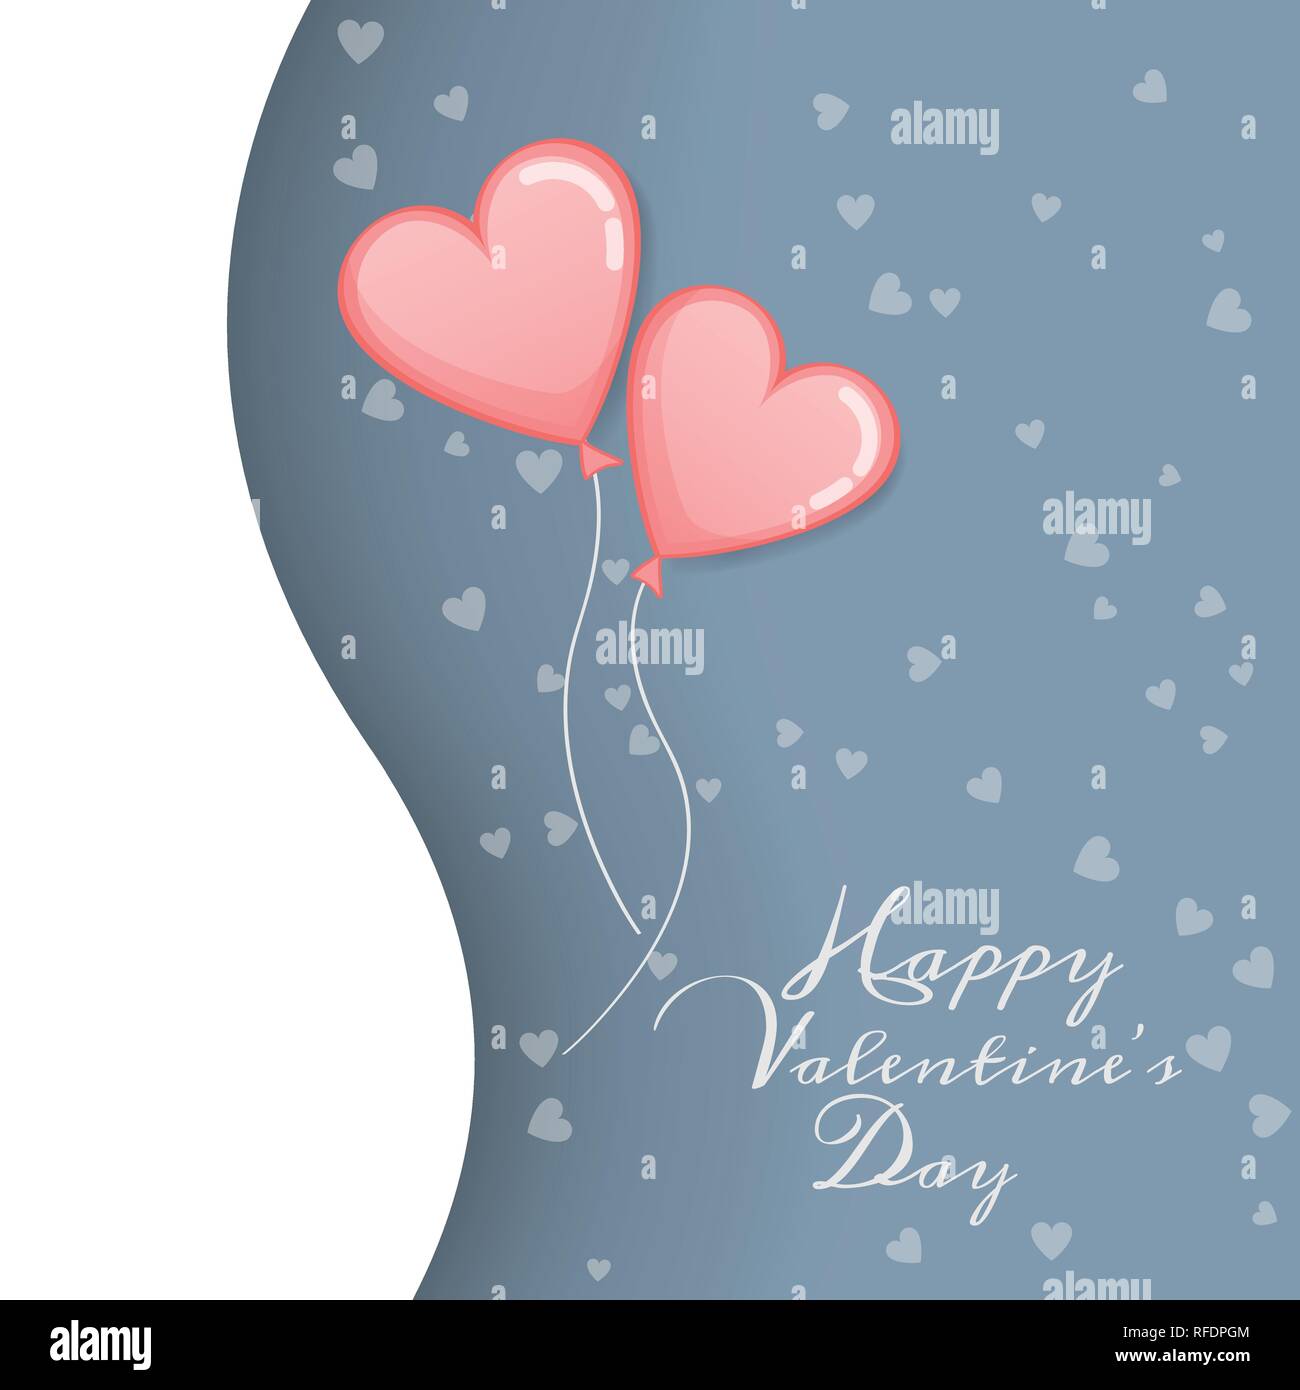 Vecteur d'amour et de Happy Valentines Day. Deux ballon rose avec forme de coeur flotter jusqu'au ciel avec Happy Valentines Day message texte. Salutation de la Saint-Valentin Illustration de Vecteur